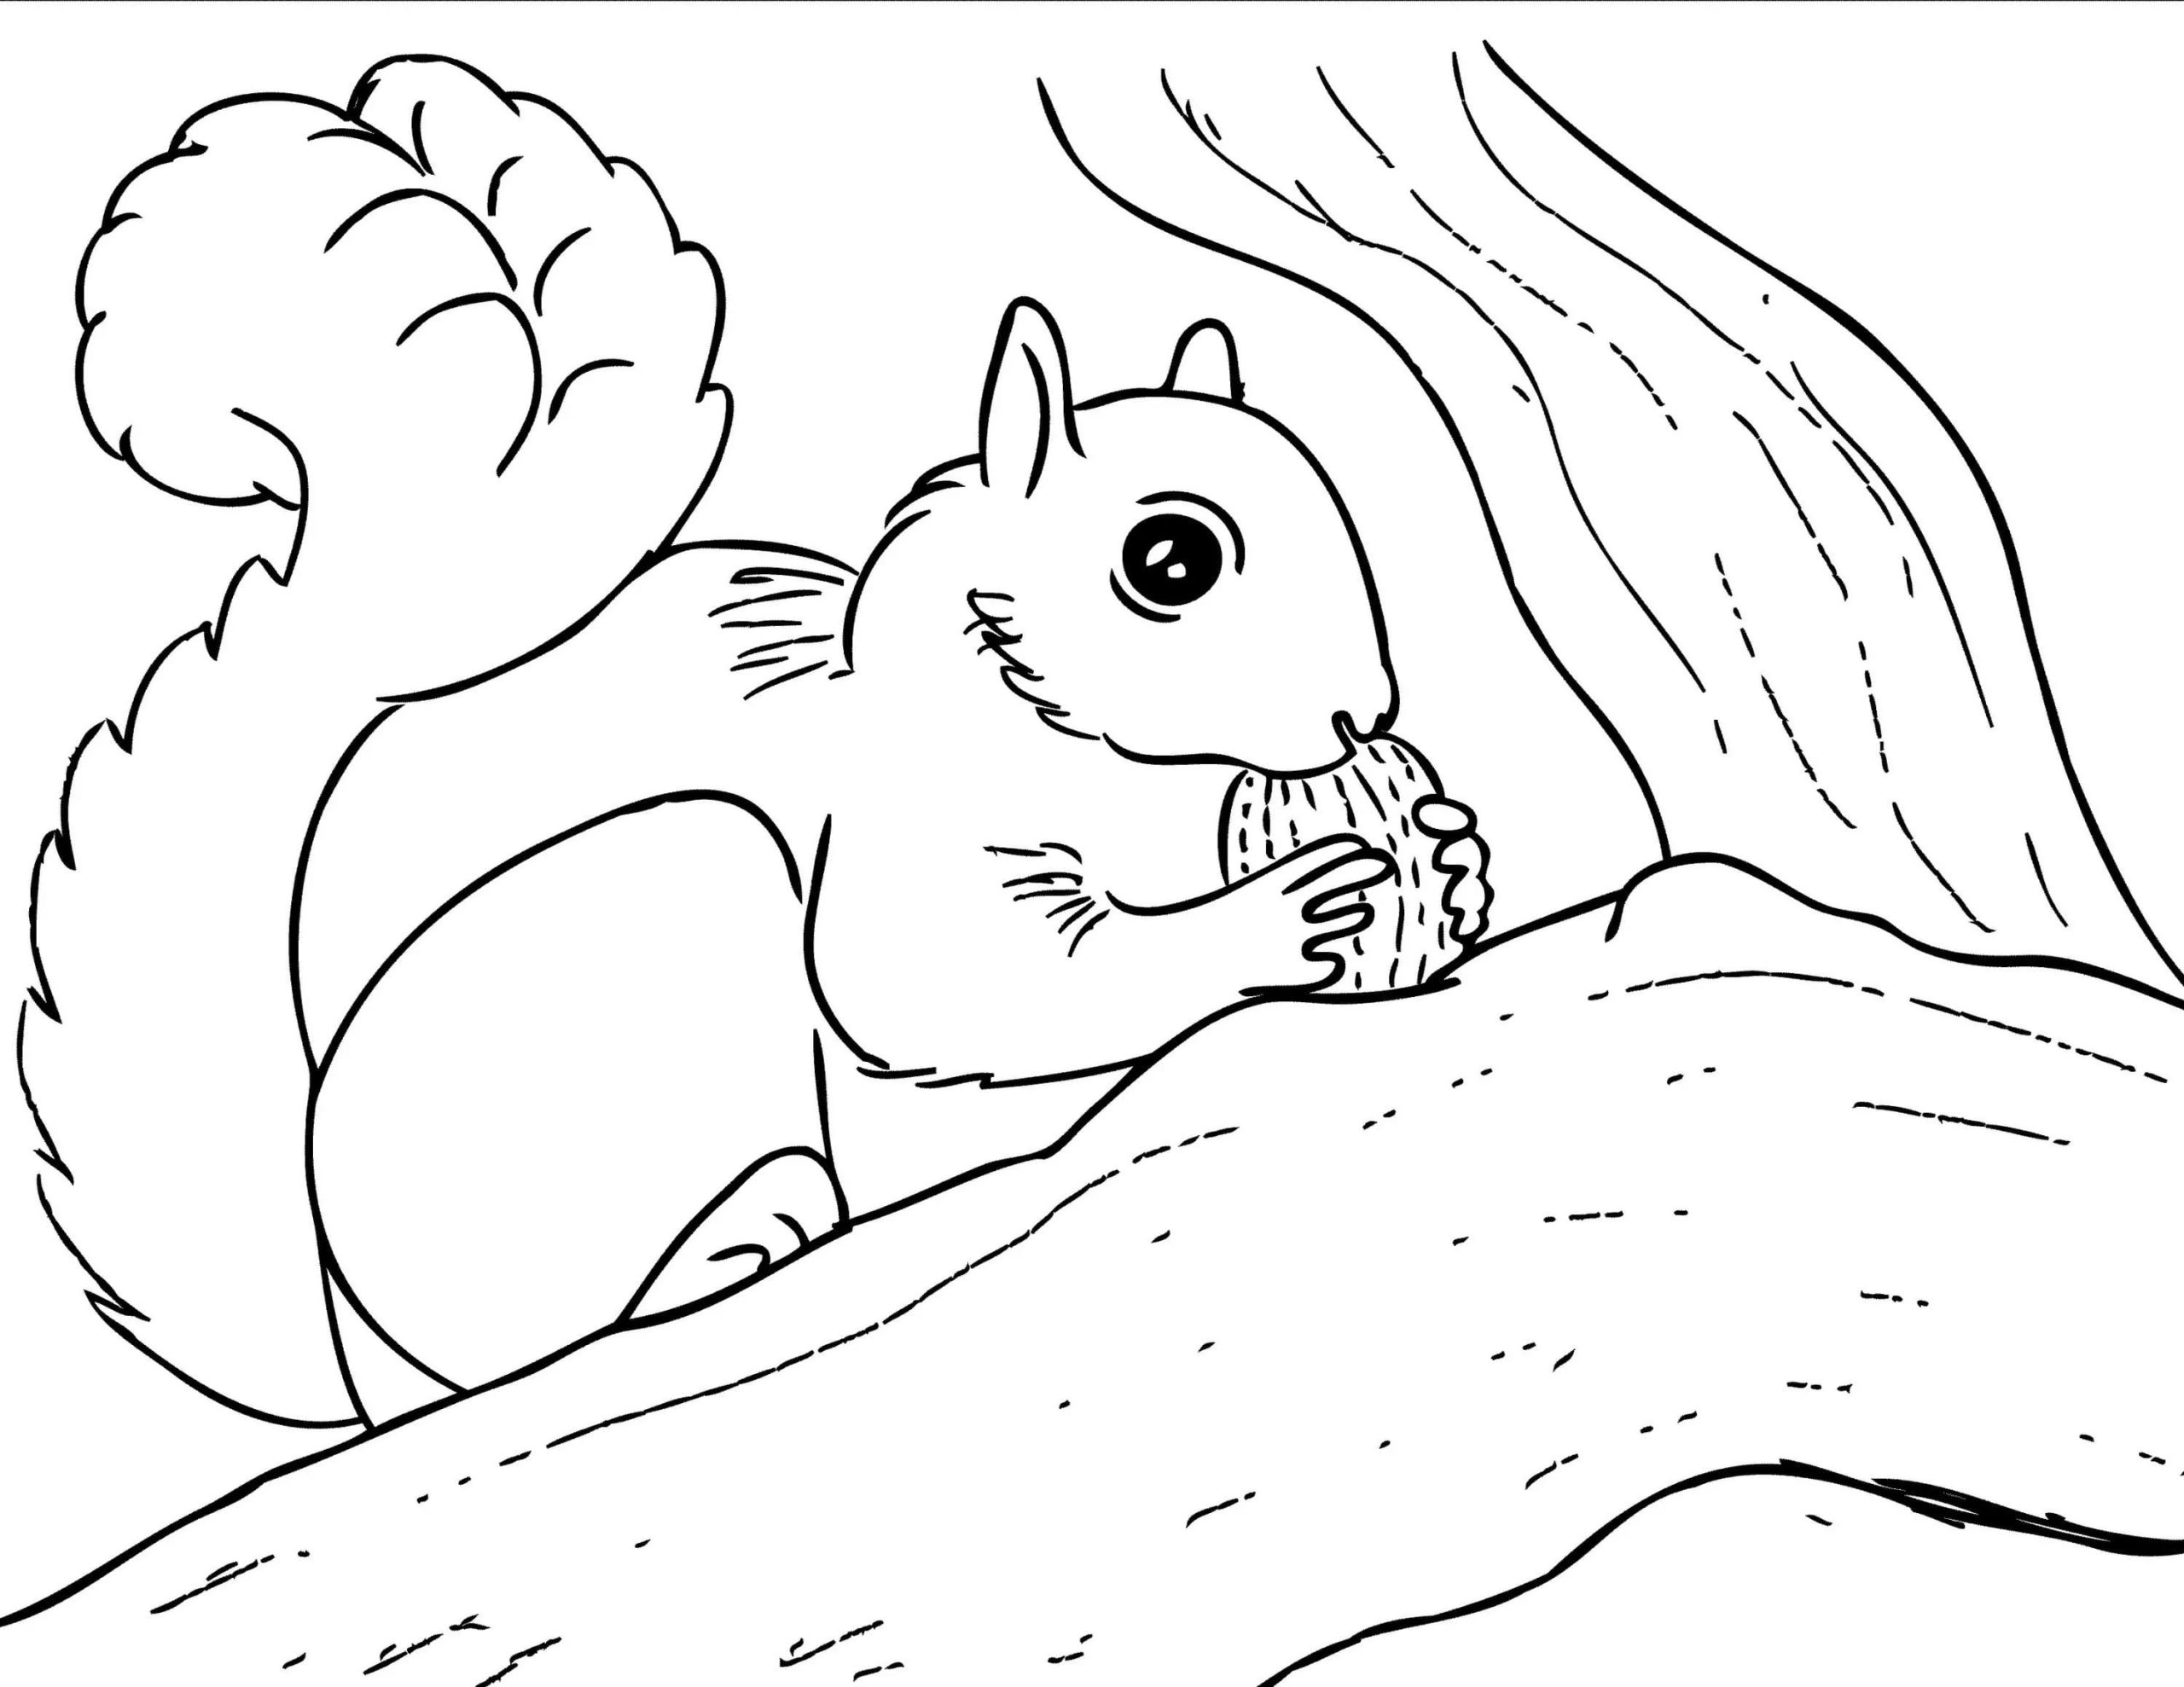 Attractive winter squirrel coloring book